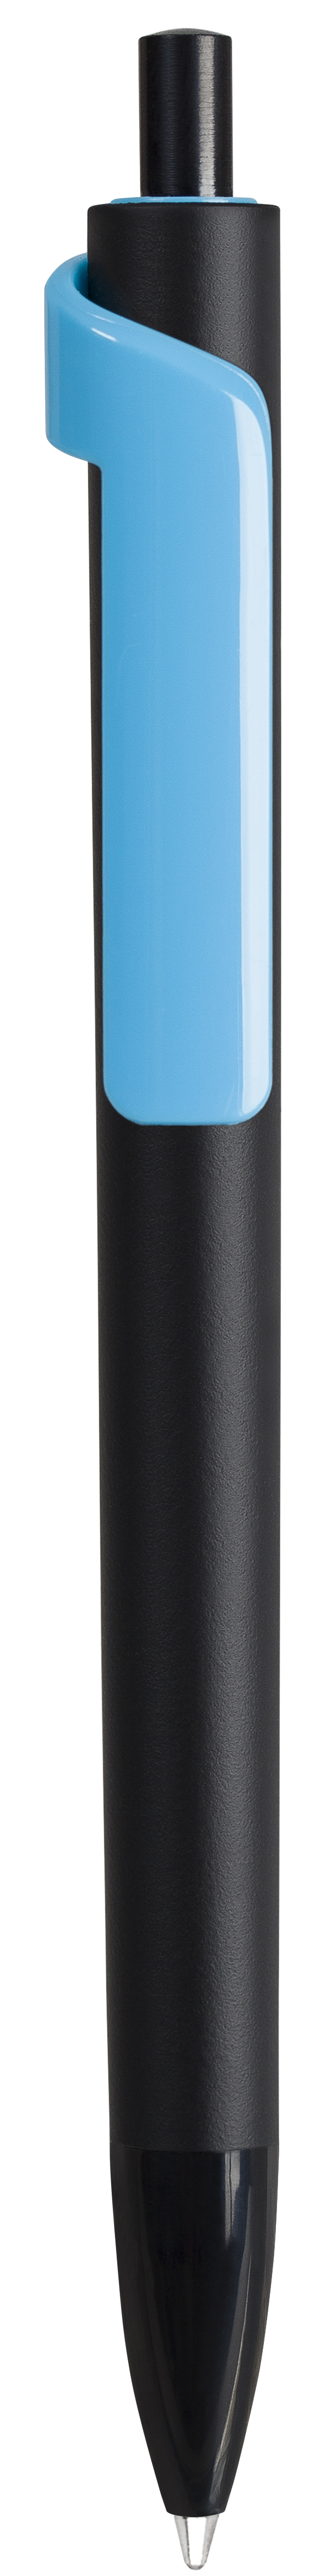 Ручка шариковая FORTE SOFT BLACK, черный/голубой, пластик, покрытие soft touch